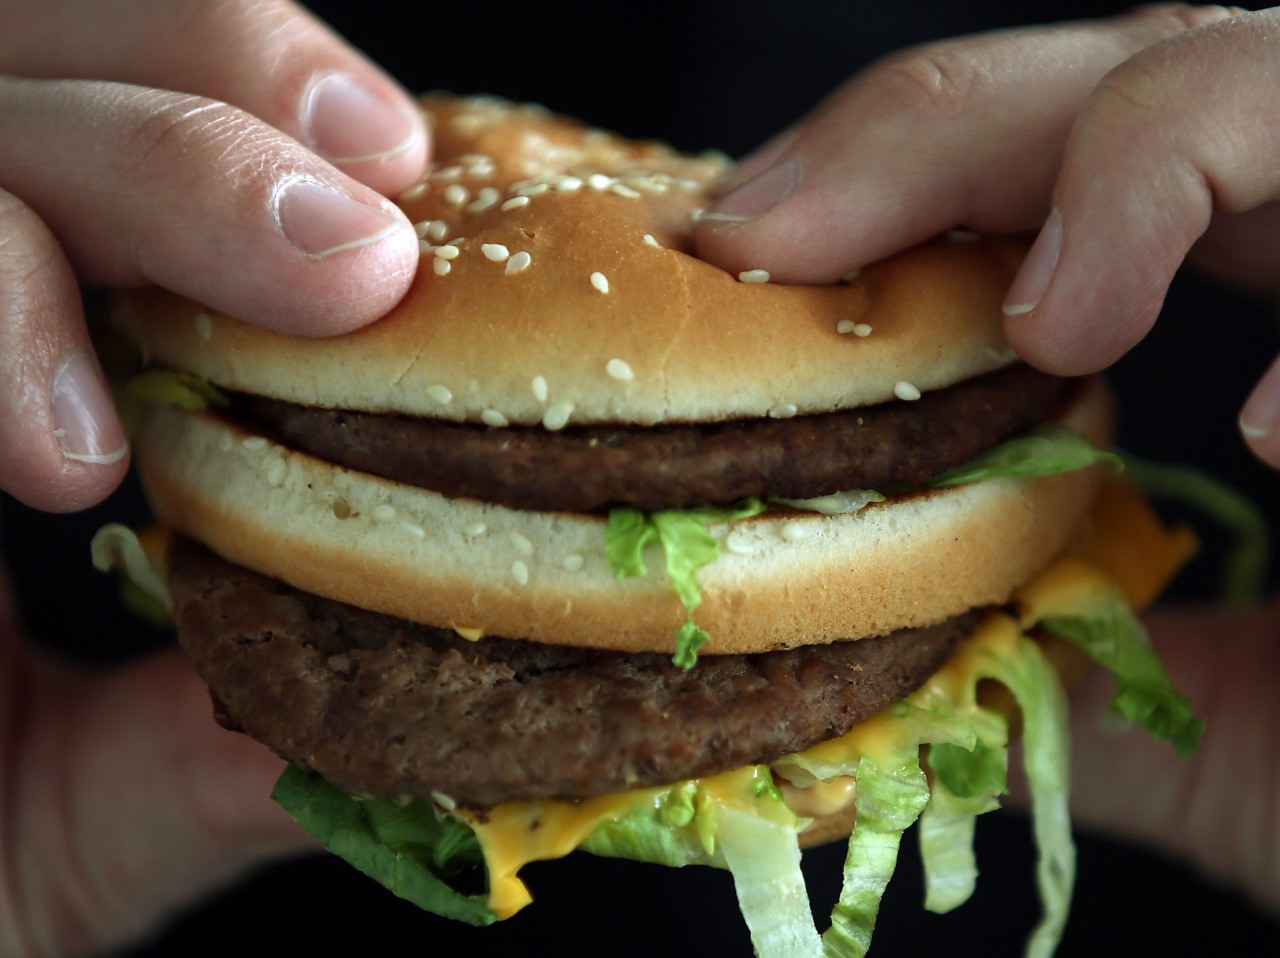 McDonald's bietet zwei neue Burger an. Doch die kommen nicht bei allen Kunden gut an. (Symbolbild)